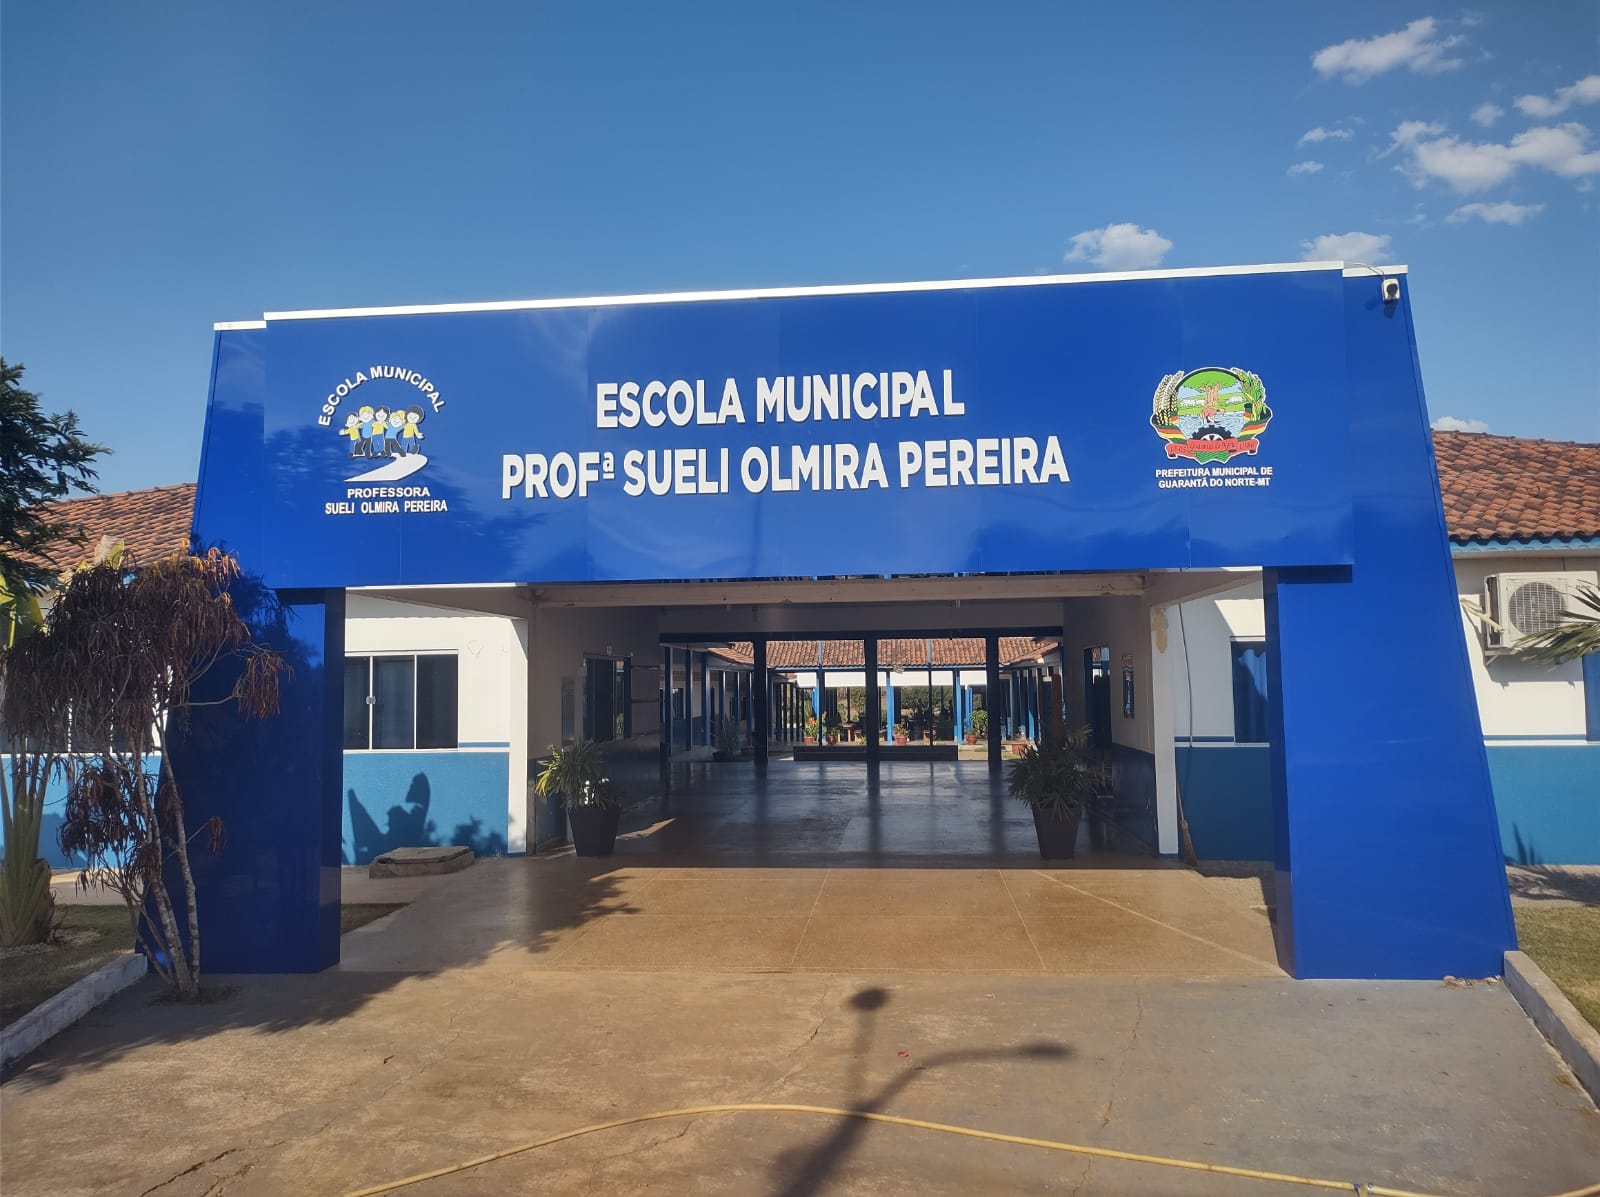 SMECD: de Guarantã do Norte investe na instalação da nova fachada da Escola Municipal Professora Sueli Olmira Pereira.